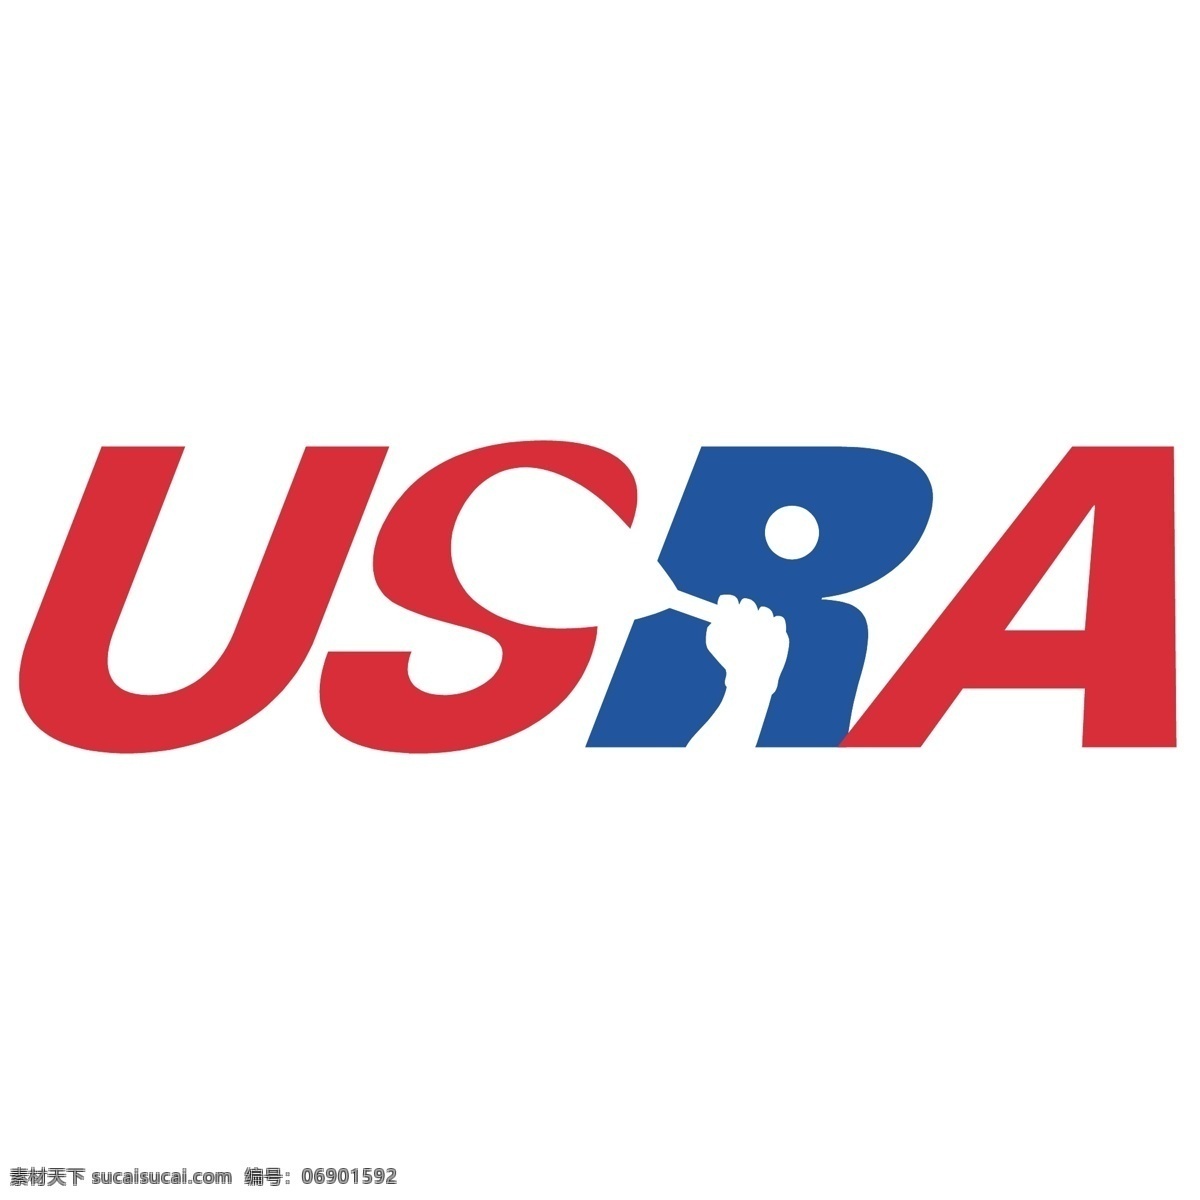 美国 网球 协会 标识 公司 免费 品牌 品牌标识 商标 矢量标志下载 免费矢量标识 矢量 psd源文件 logo设计